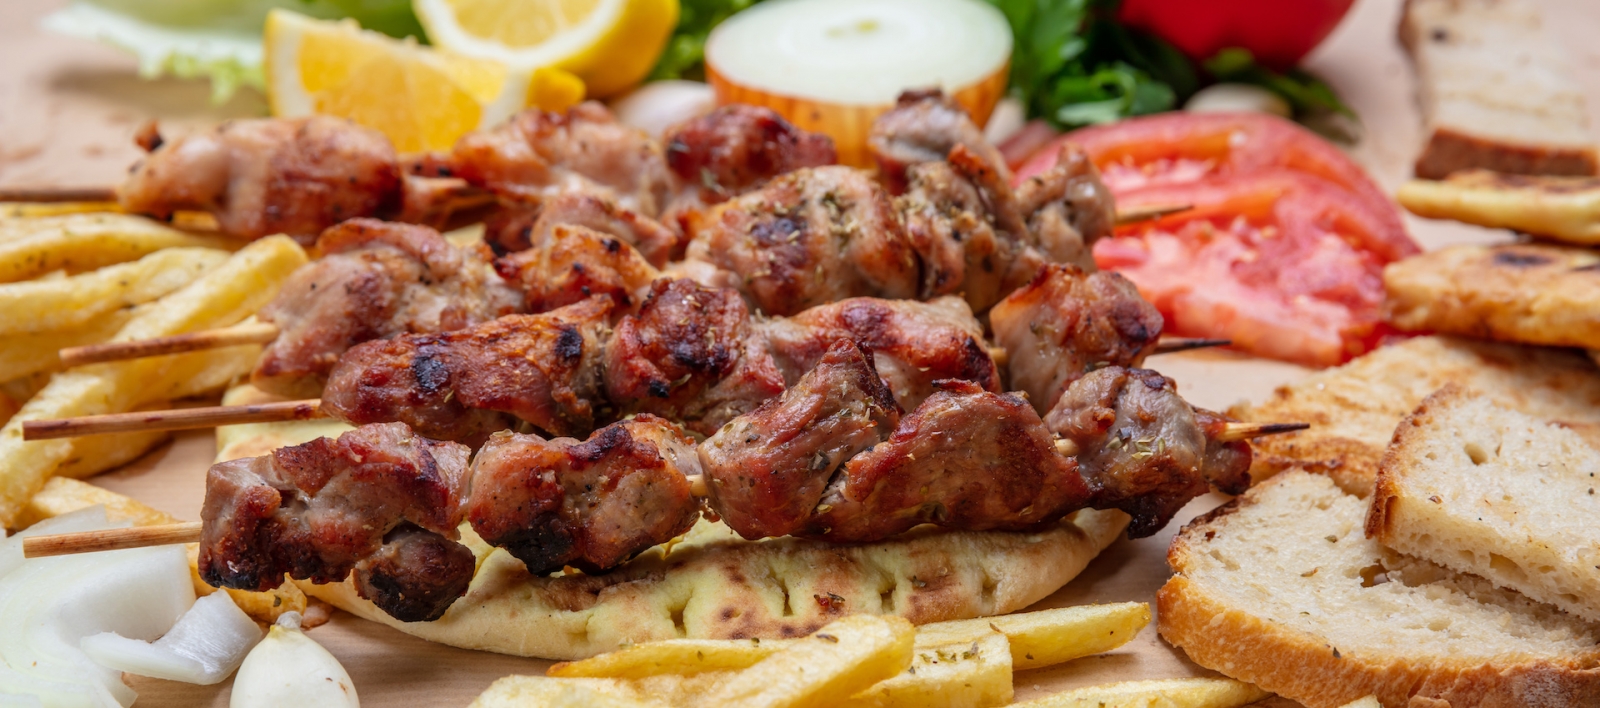 Сувлаки, мясные шашлычки, традиционные греческие турецкие мясные блюда на лаваше и картофеле